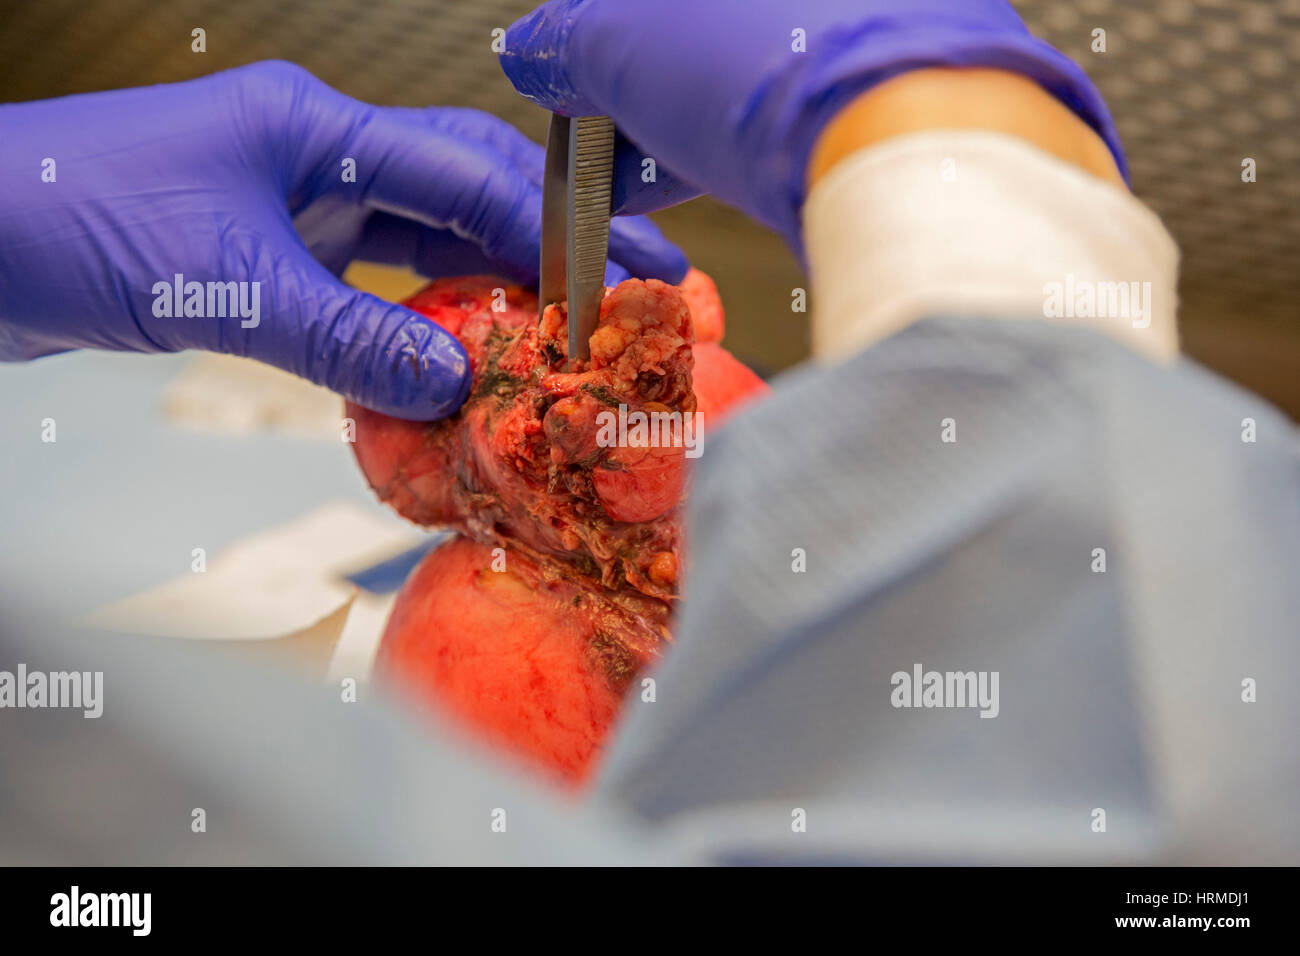 Detroit, Michigan - un assistant de pathologie au Detroit Medical Center examine un utérus avec un adénocarcinome endométrial. Banque D'Images